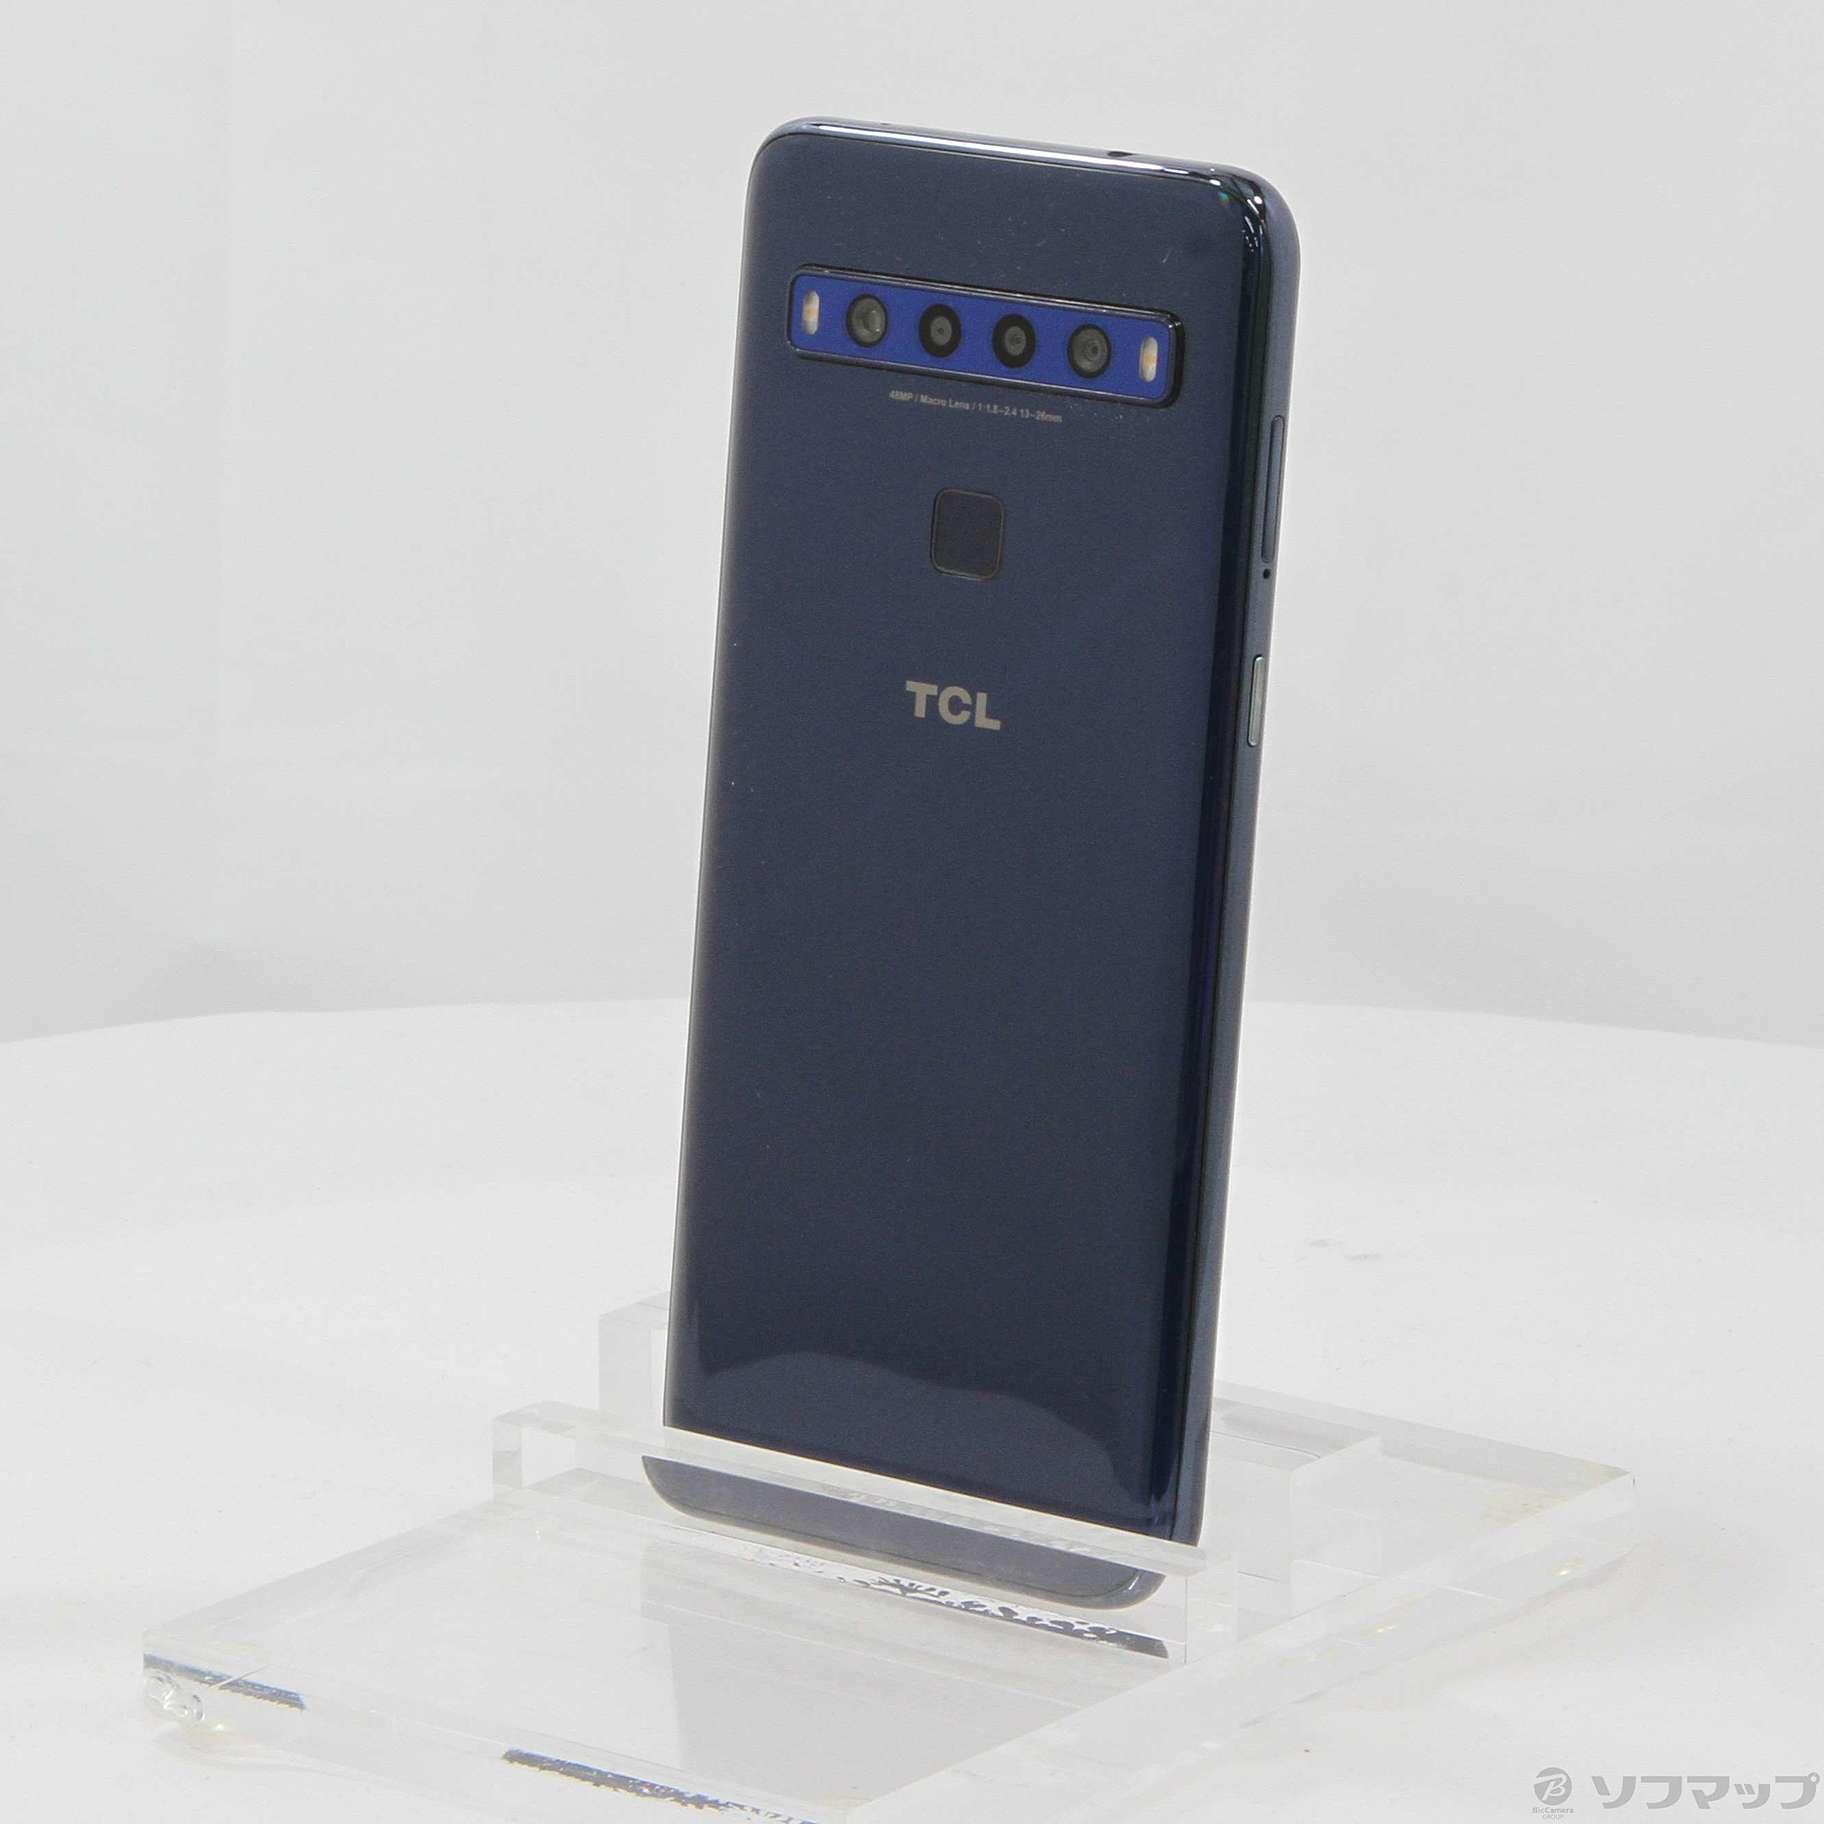 TCL - 10 Lite　simフリースマートフォン